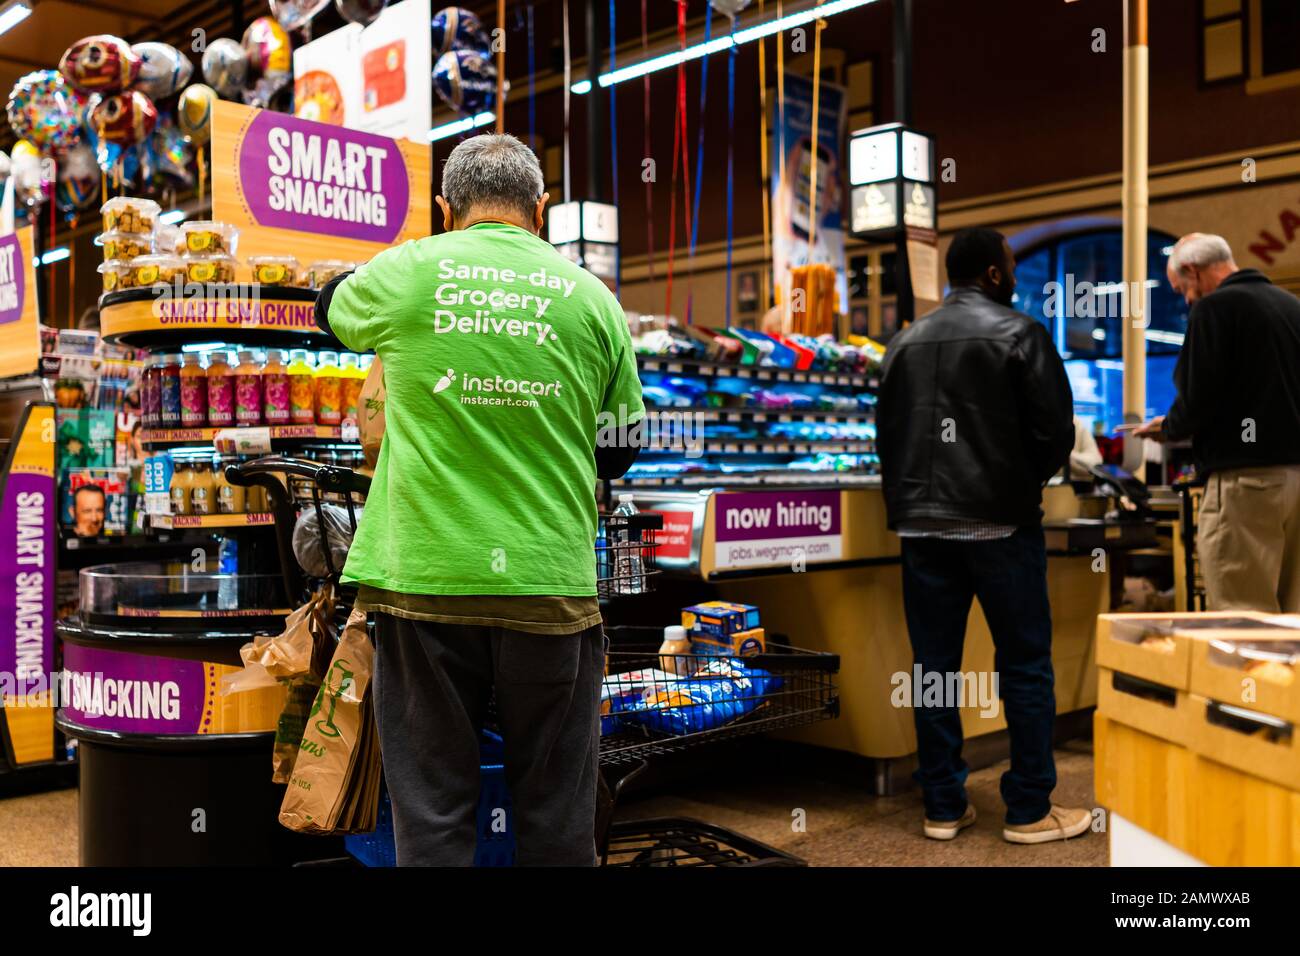 Fairfax, États-Unis - 5 décembre 2019: Wegmans magasin d'épicerie intérieur avec comptoir de caisse et travailleur d'Instacart et s'inscrire sur la chemise pour la livraison le jour même Banque D'Images